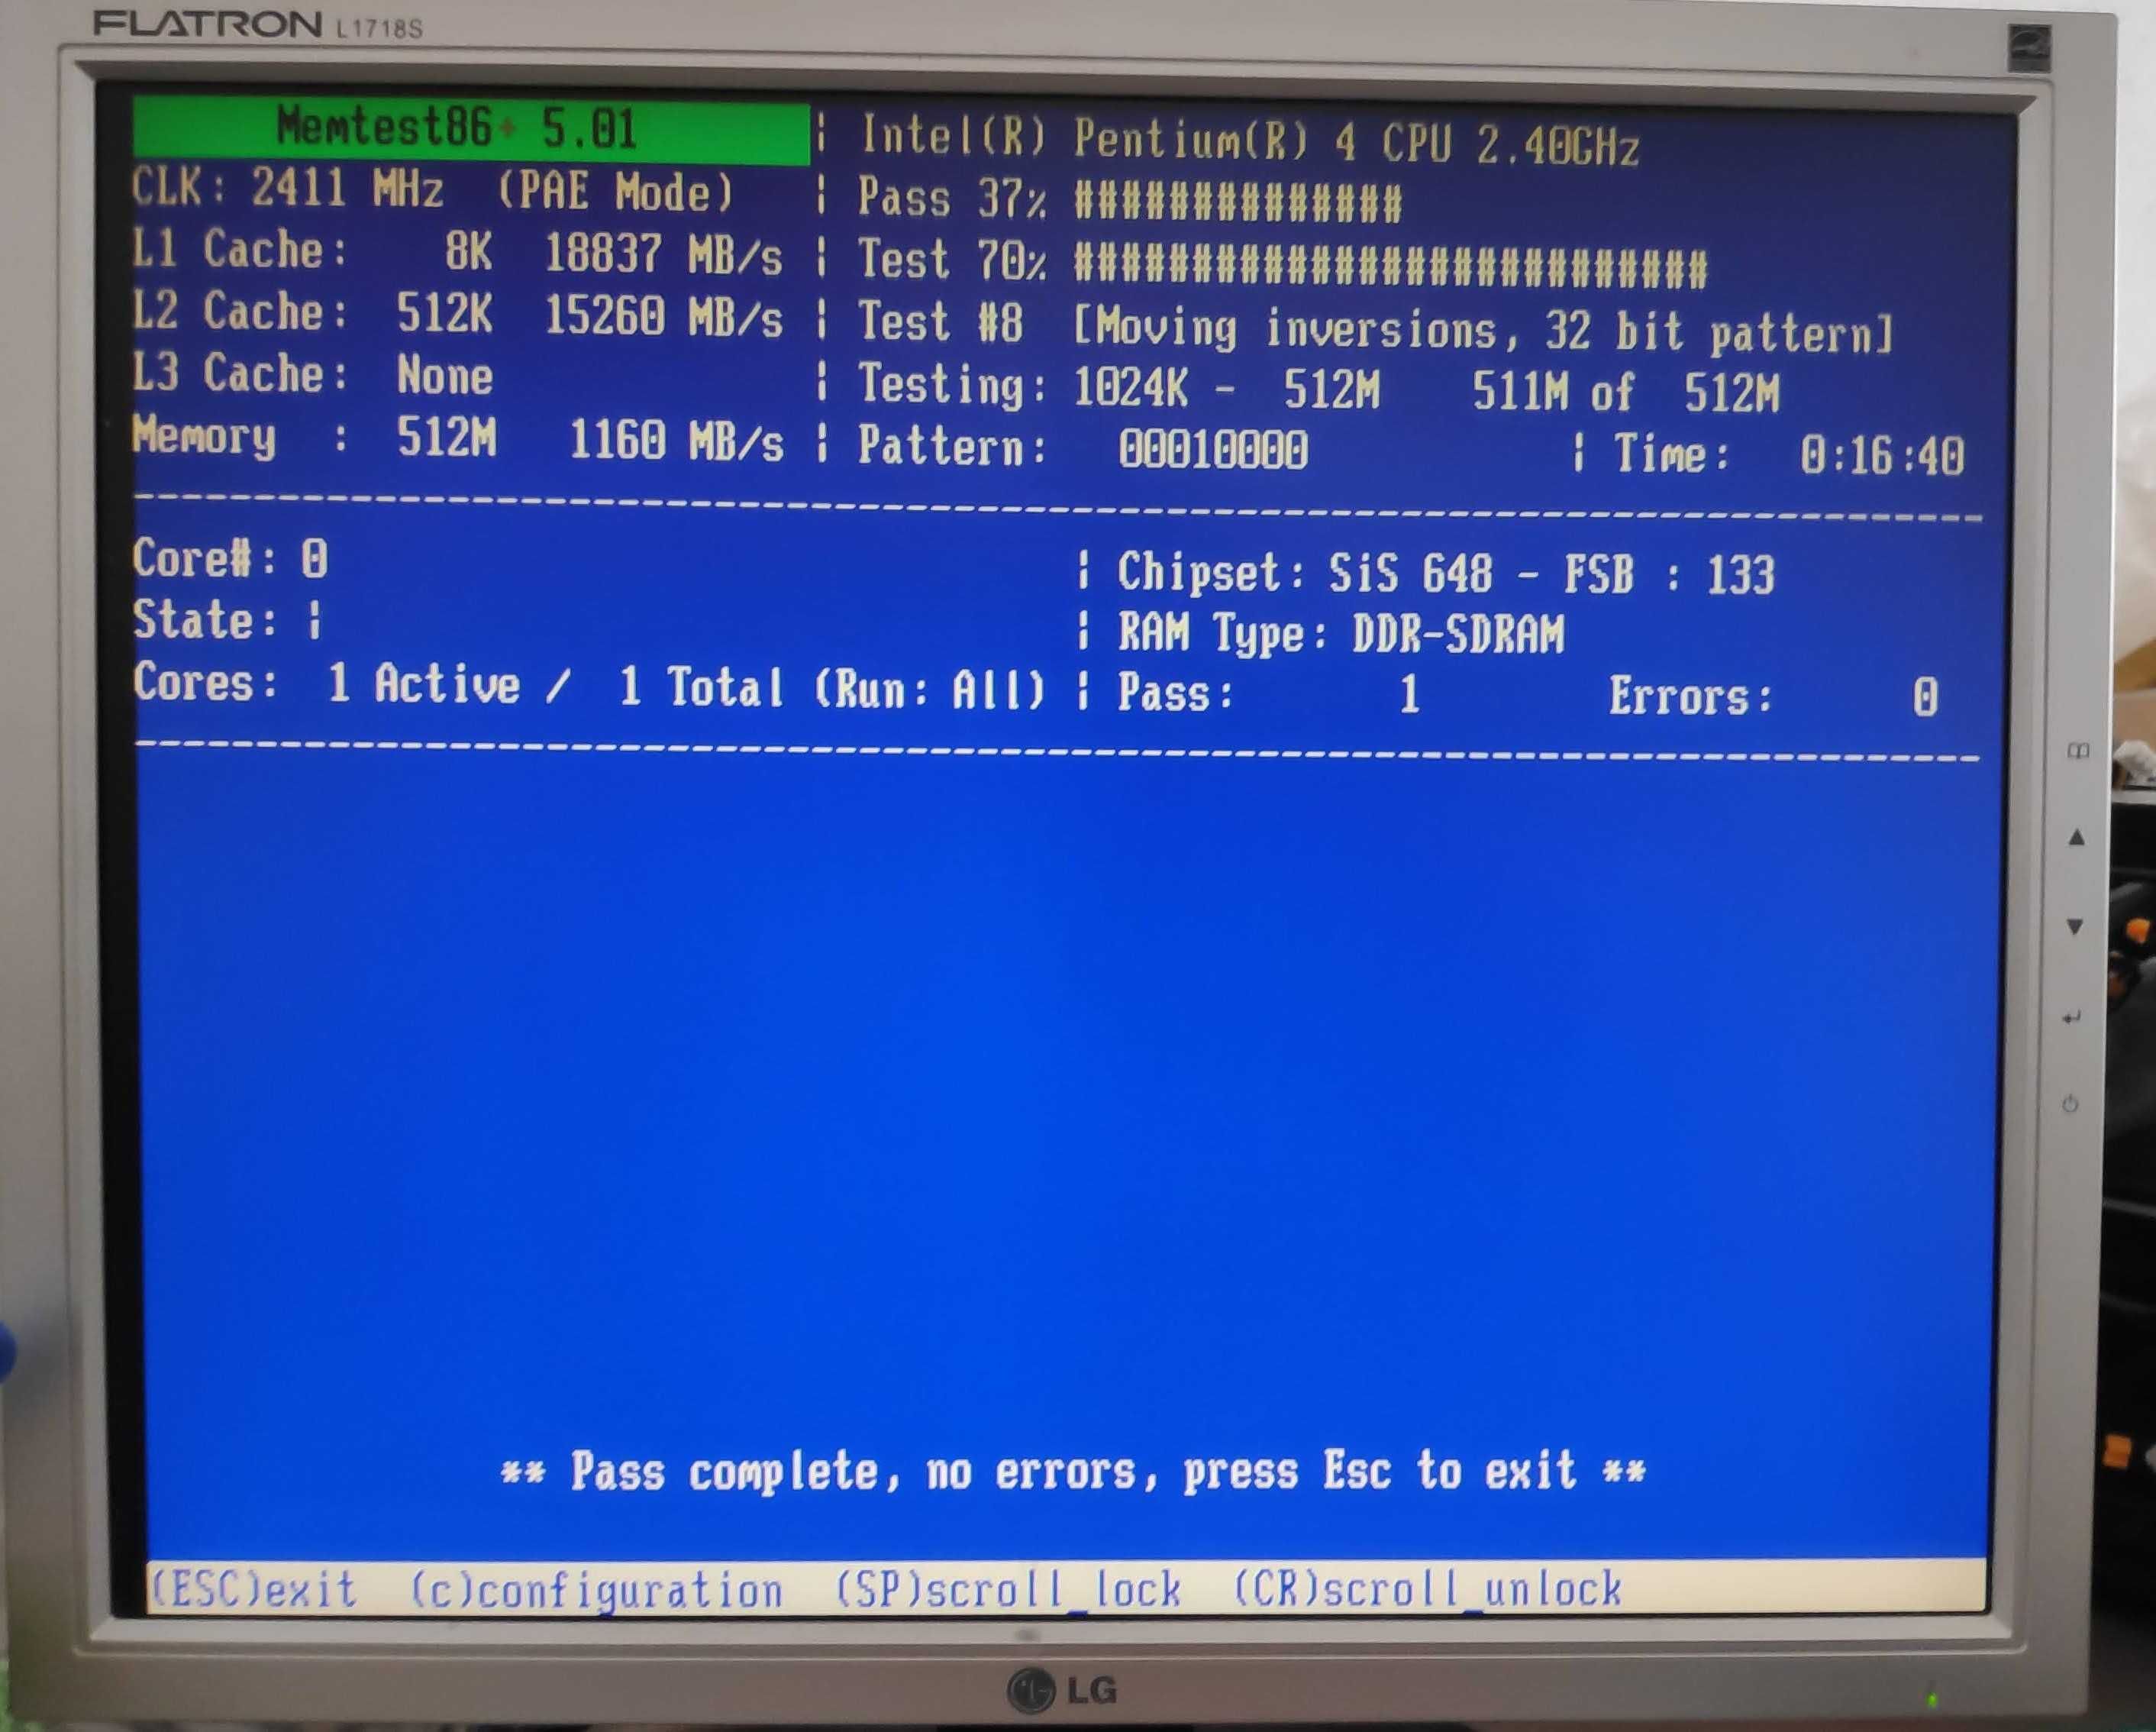 Bundle Retro 1 [Motherboard + Processador + Placa Gráfica + RAM]